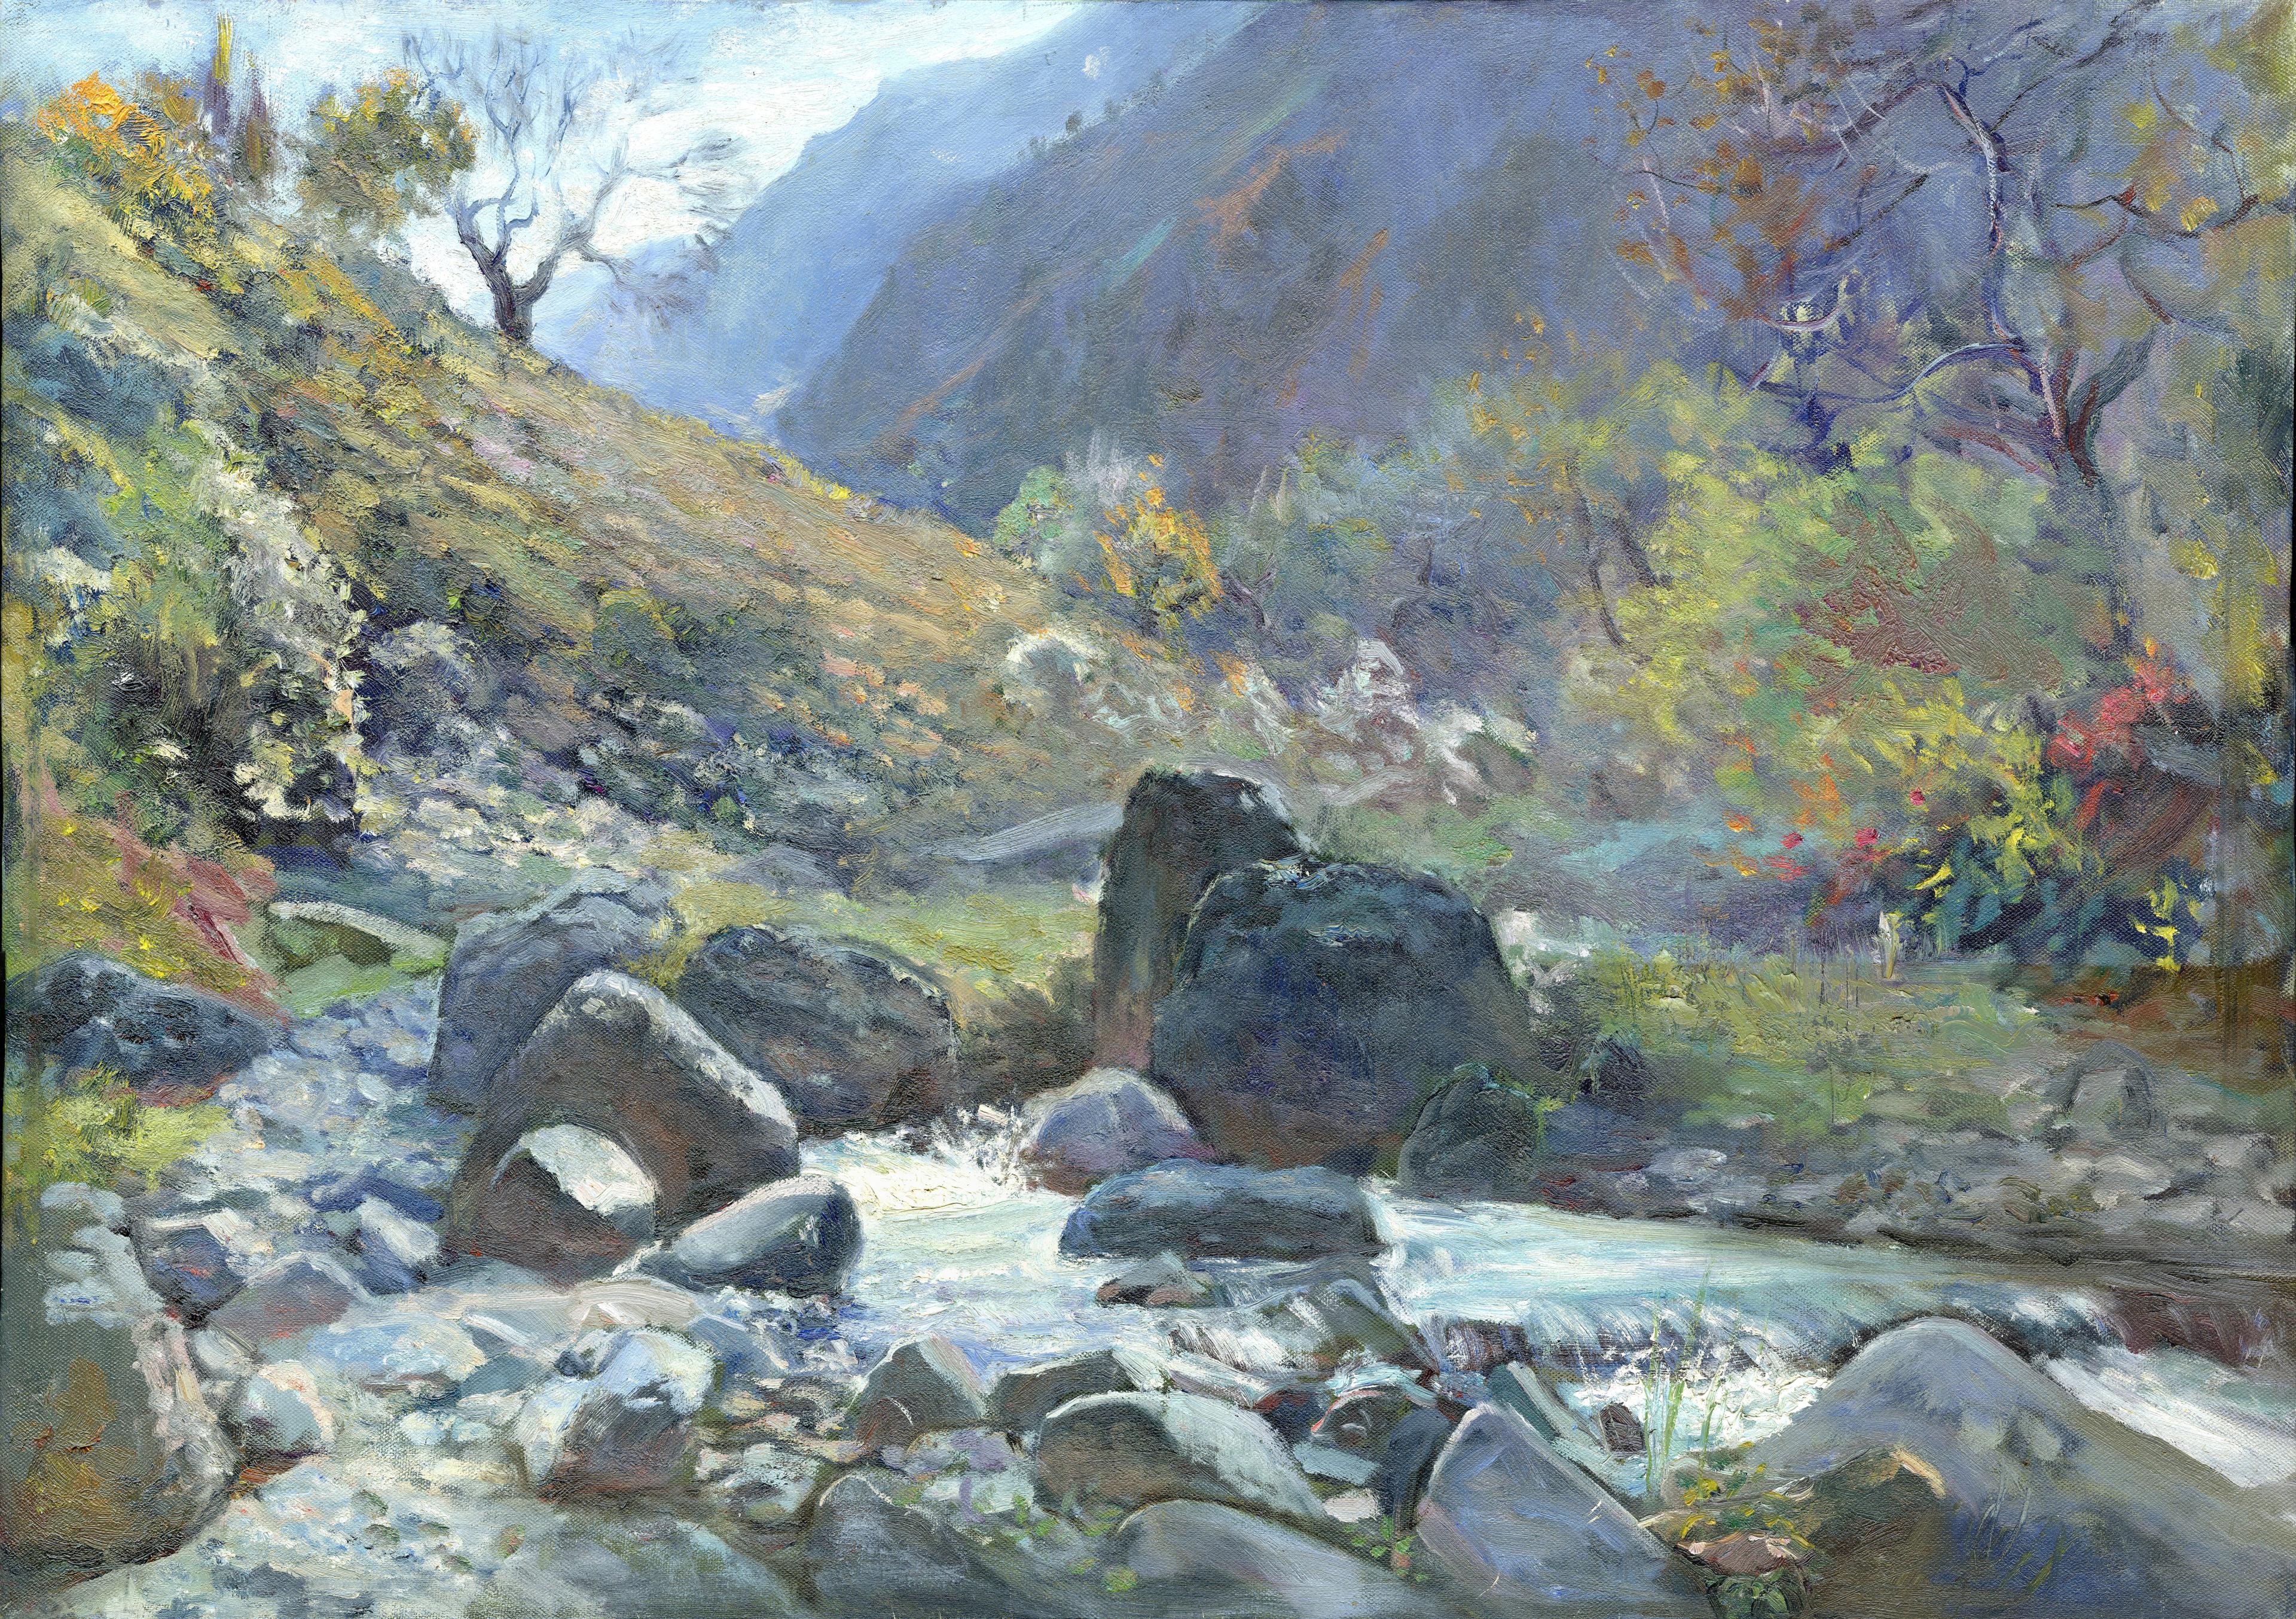 Nanaya Mountains. Original modern art painting